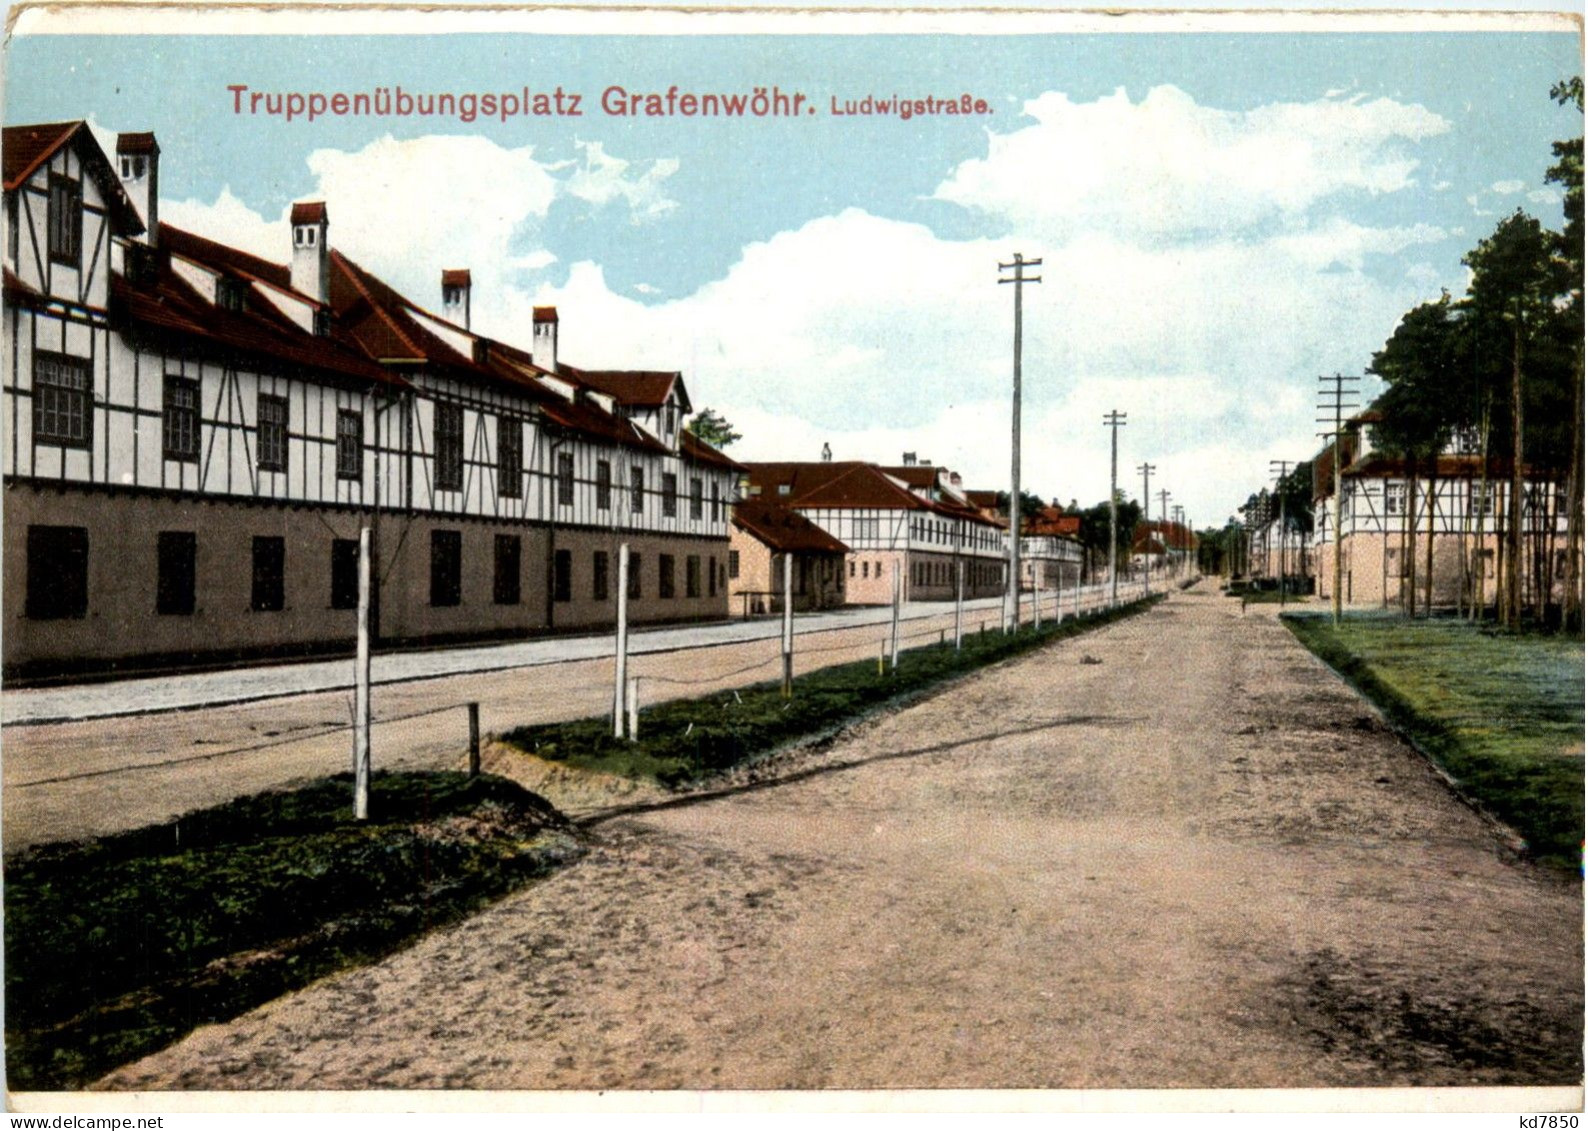 Bayern/Grafenwöhr - Truppenübungsplatz - Ludwigstrasse - Grafenwoehr